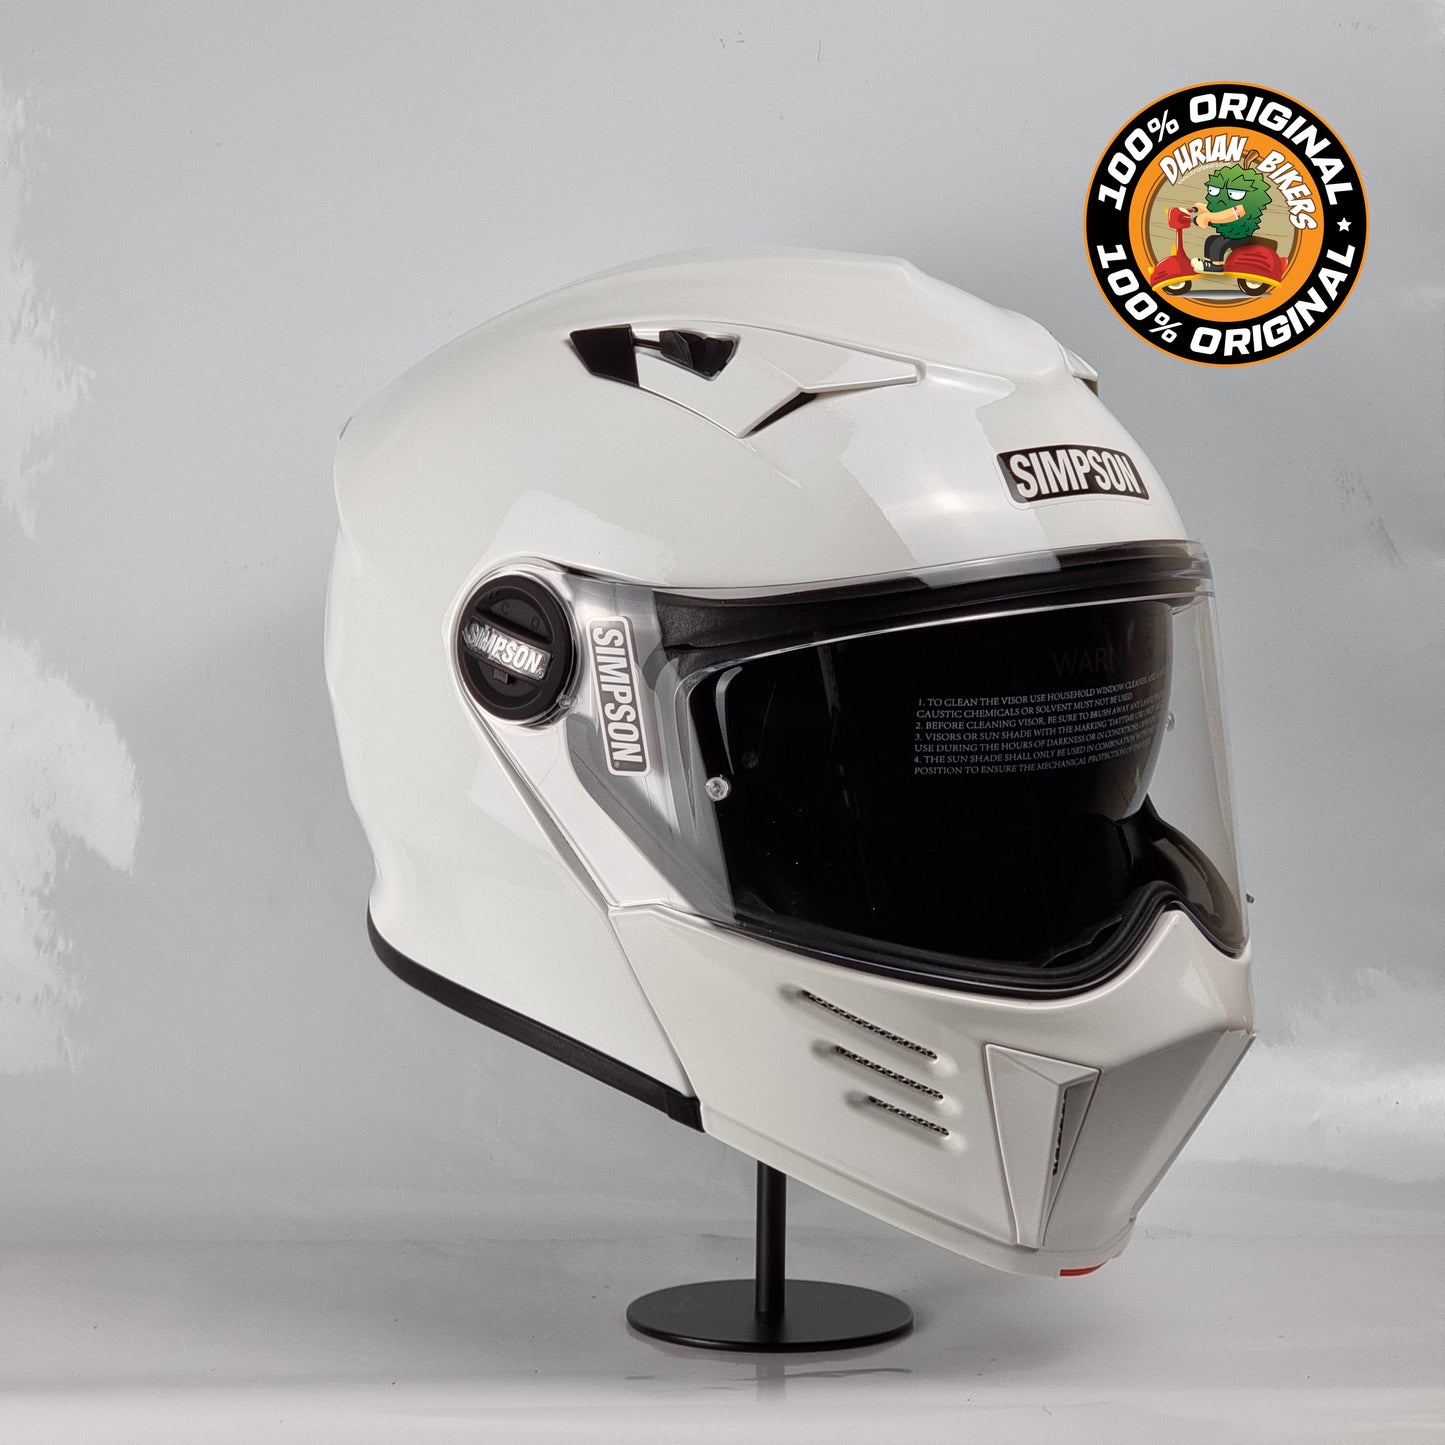 Simpson Helmet Darksome Bandit (Gloss White)